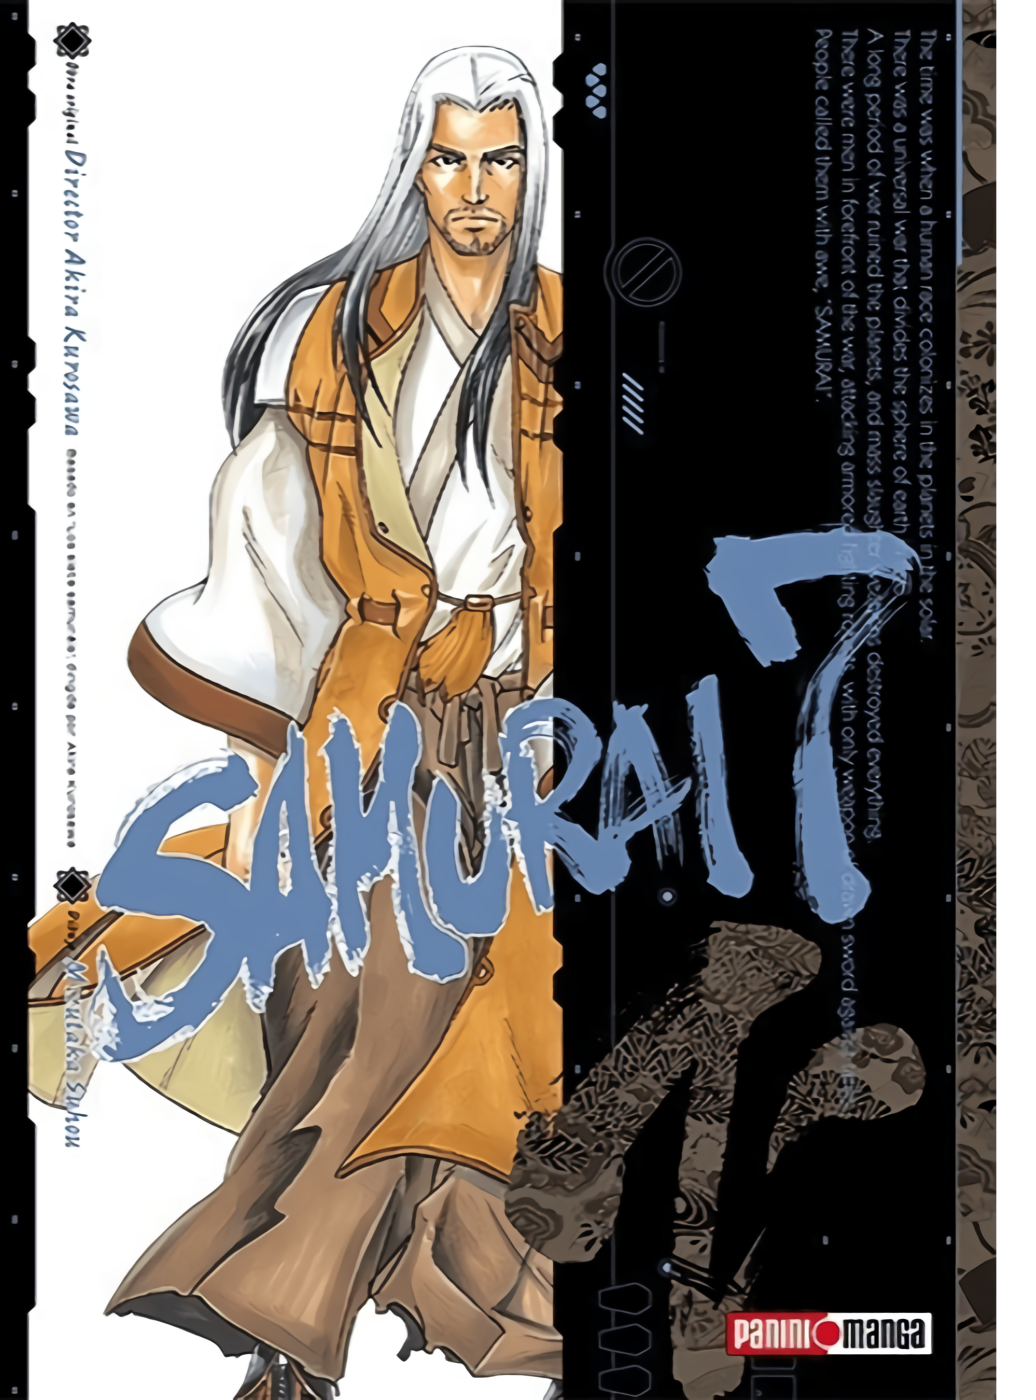 Samurai 7 - #1